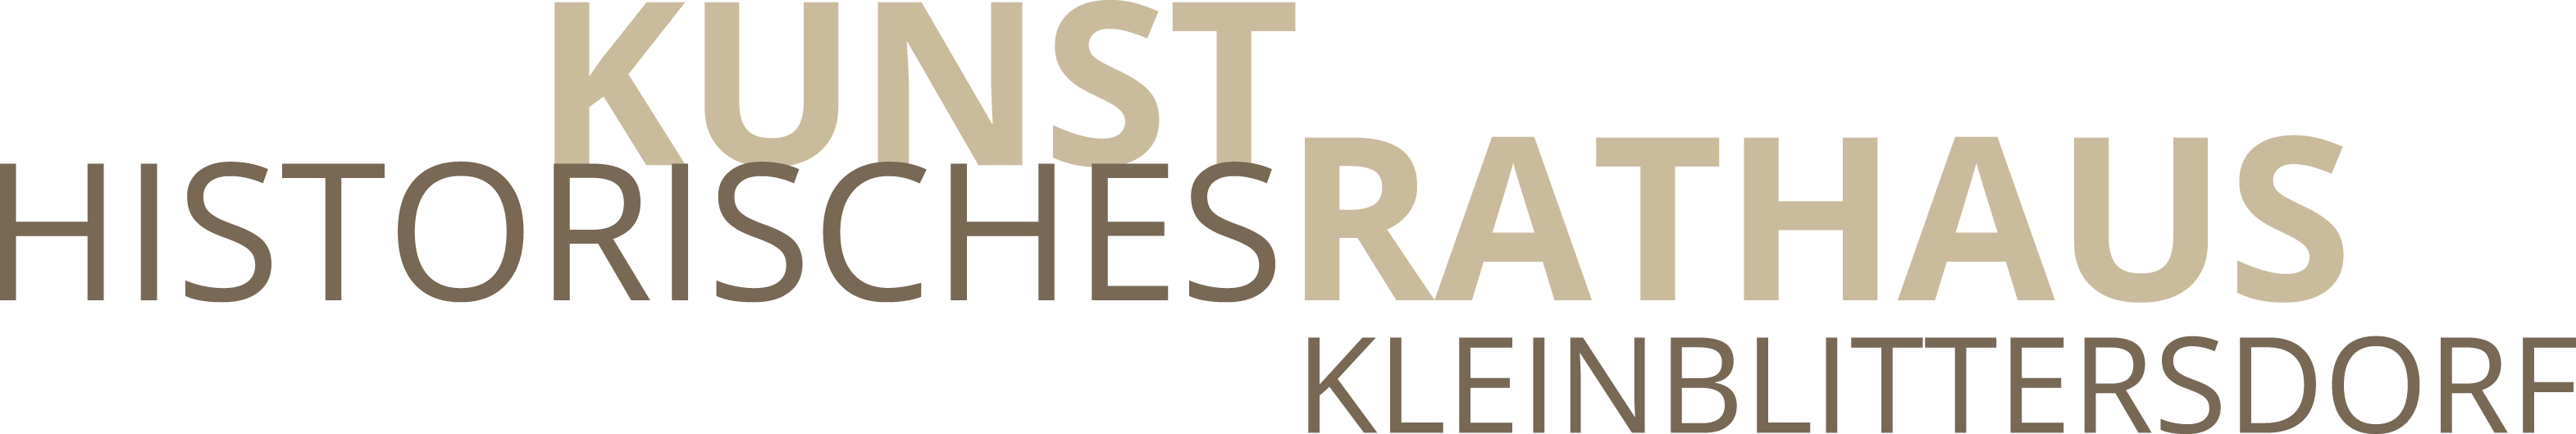 Logo Kunst im Historischen Rathaus Kleinblittersdorf